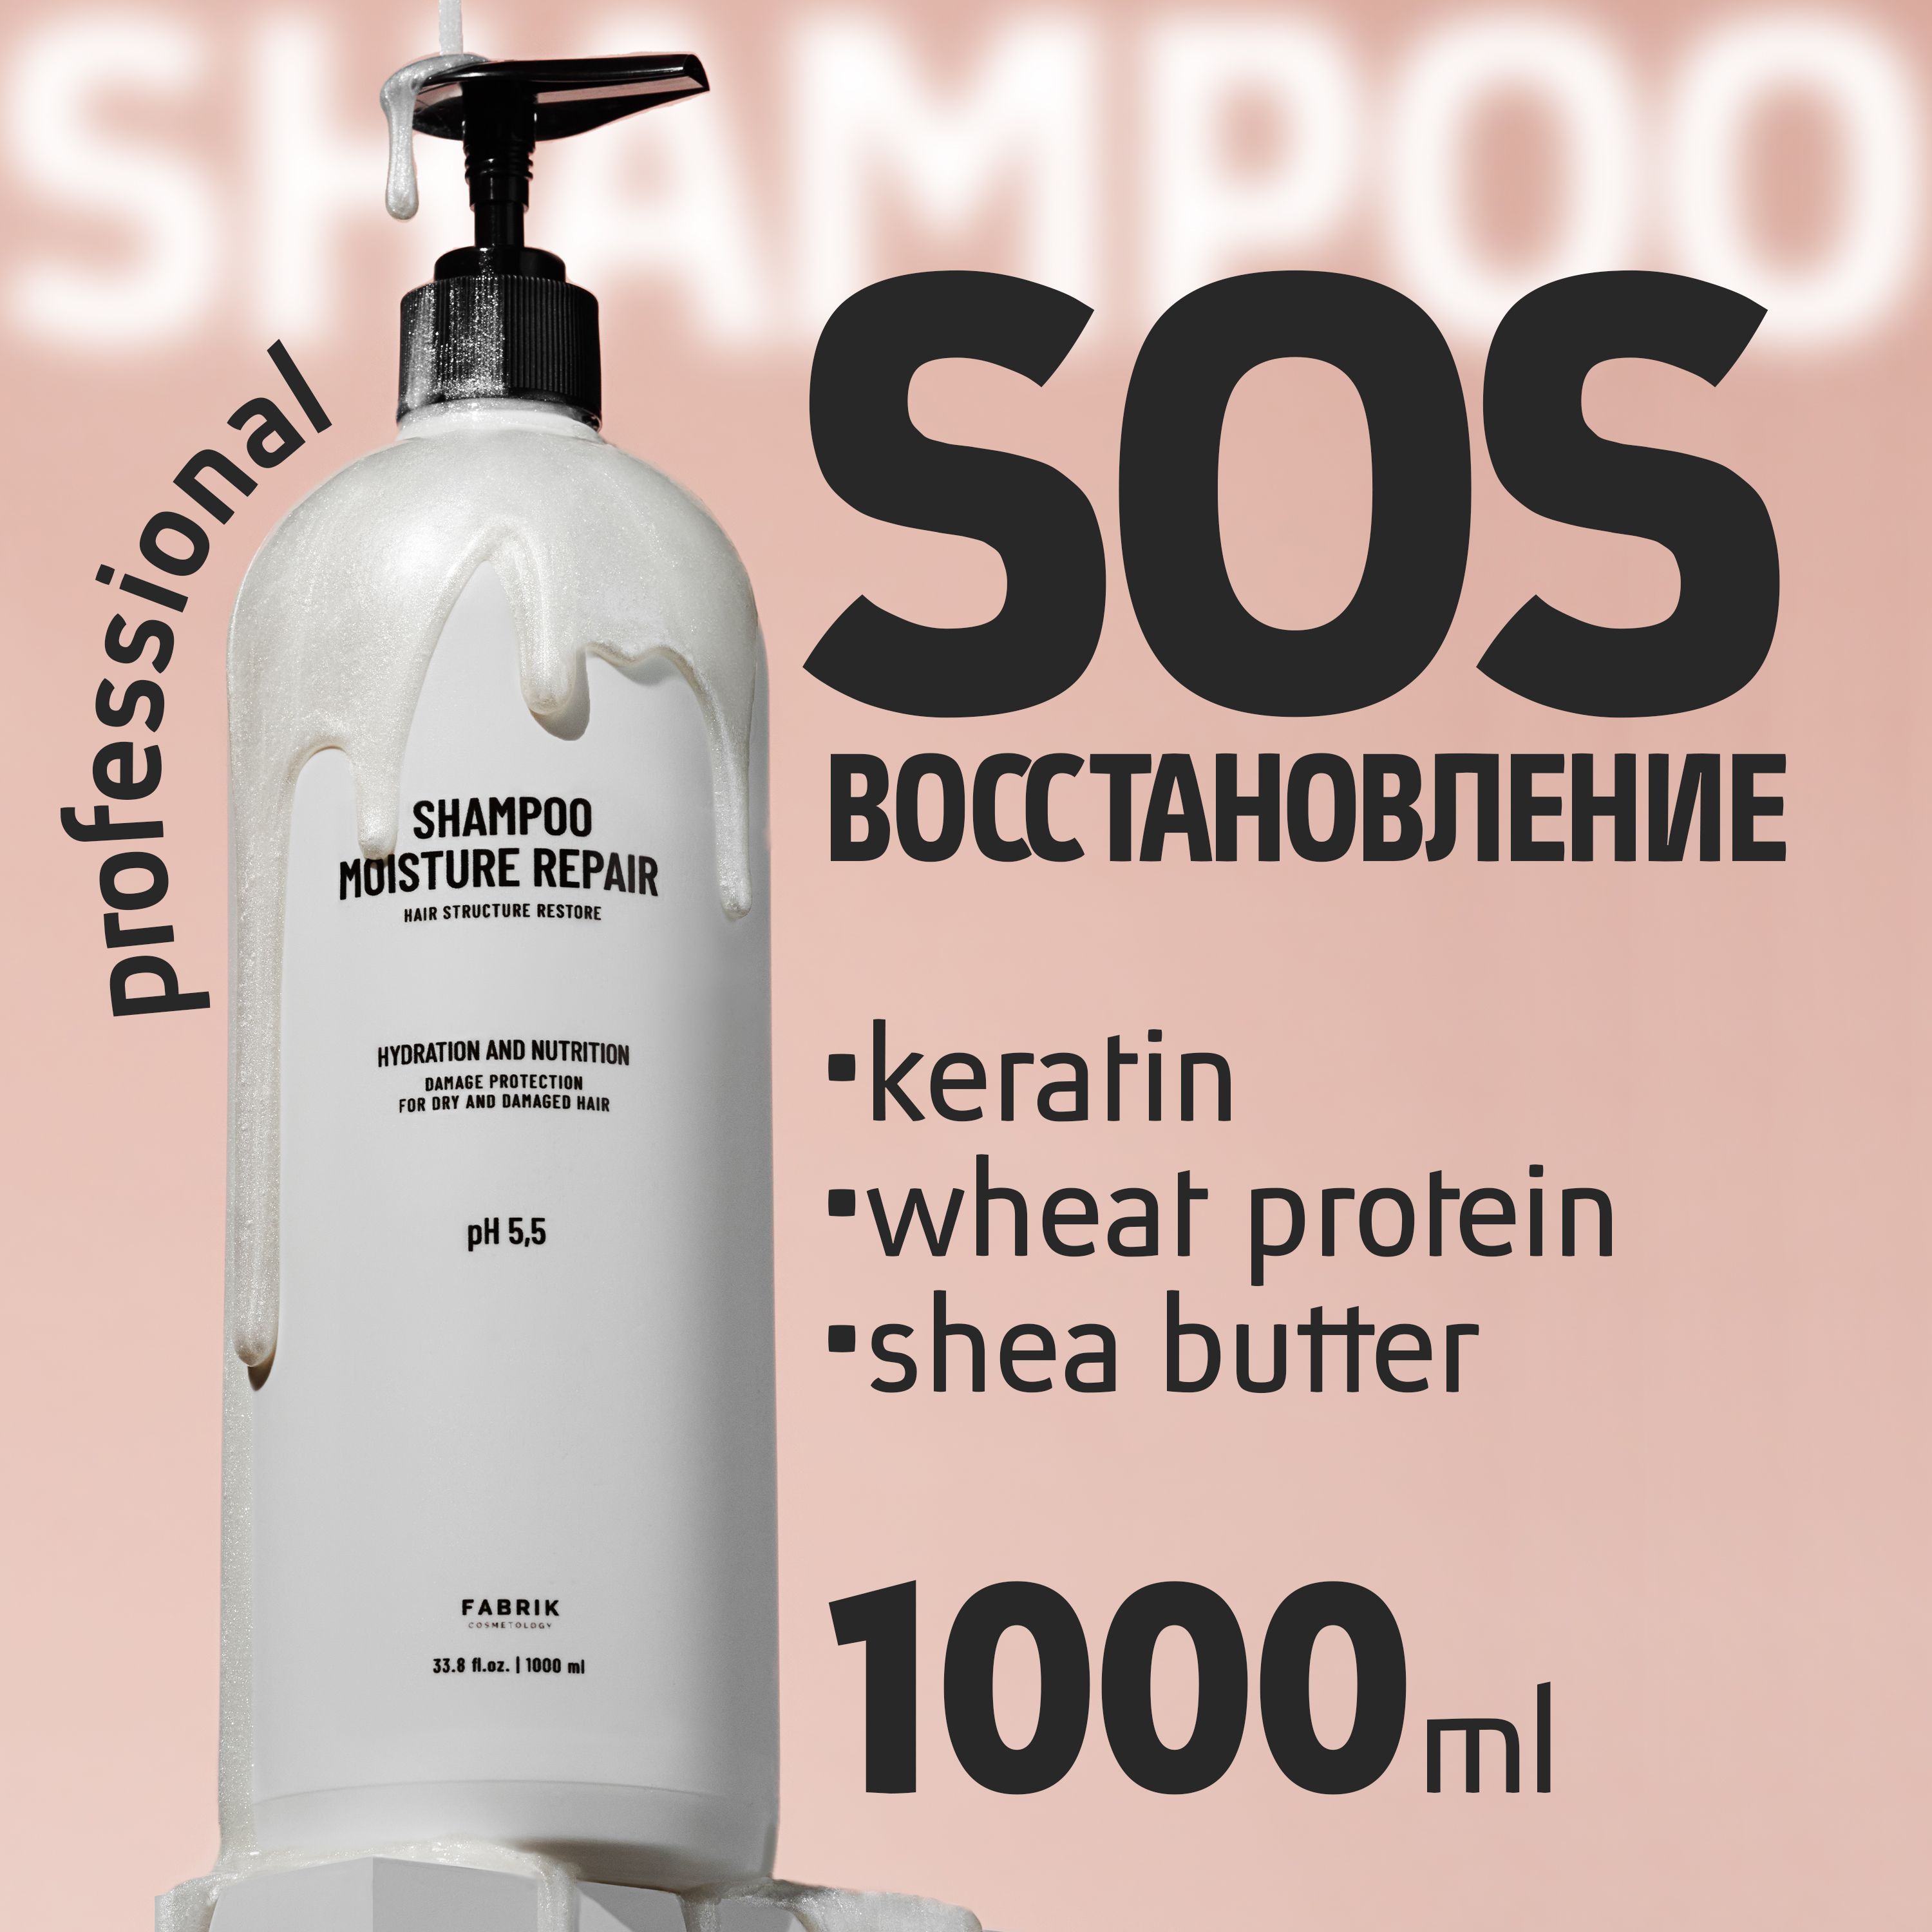 Шампунь для волос Fabrik Cosmetology с кератином 1000 мл шампунь bes fragrance с премиальной отдушкой лакрица 1000 мл